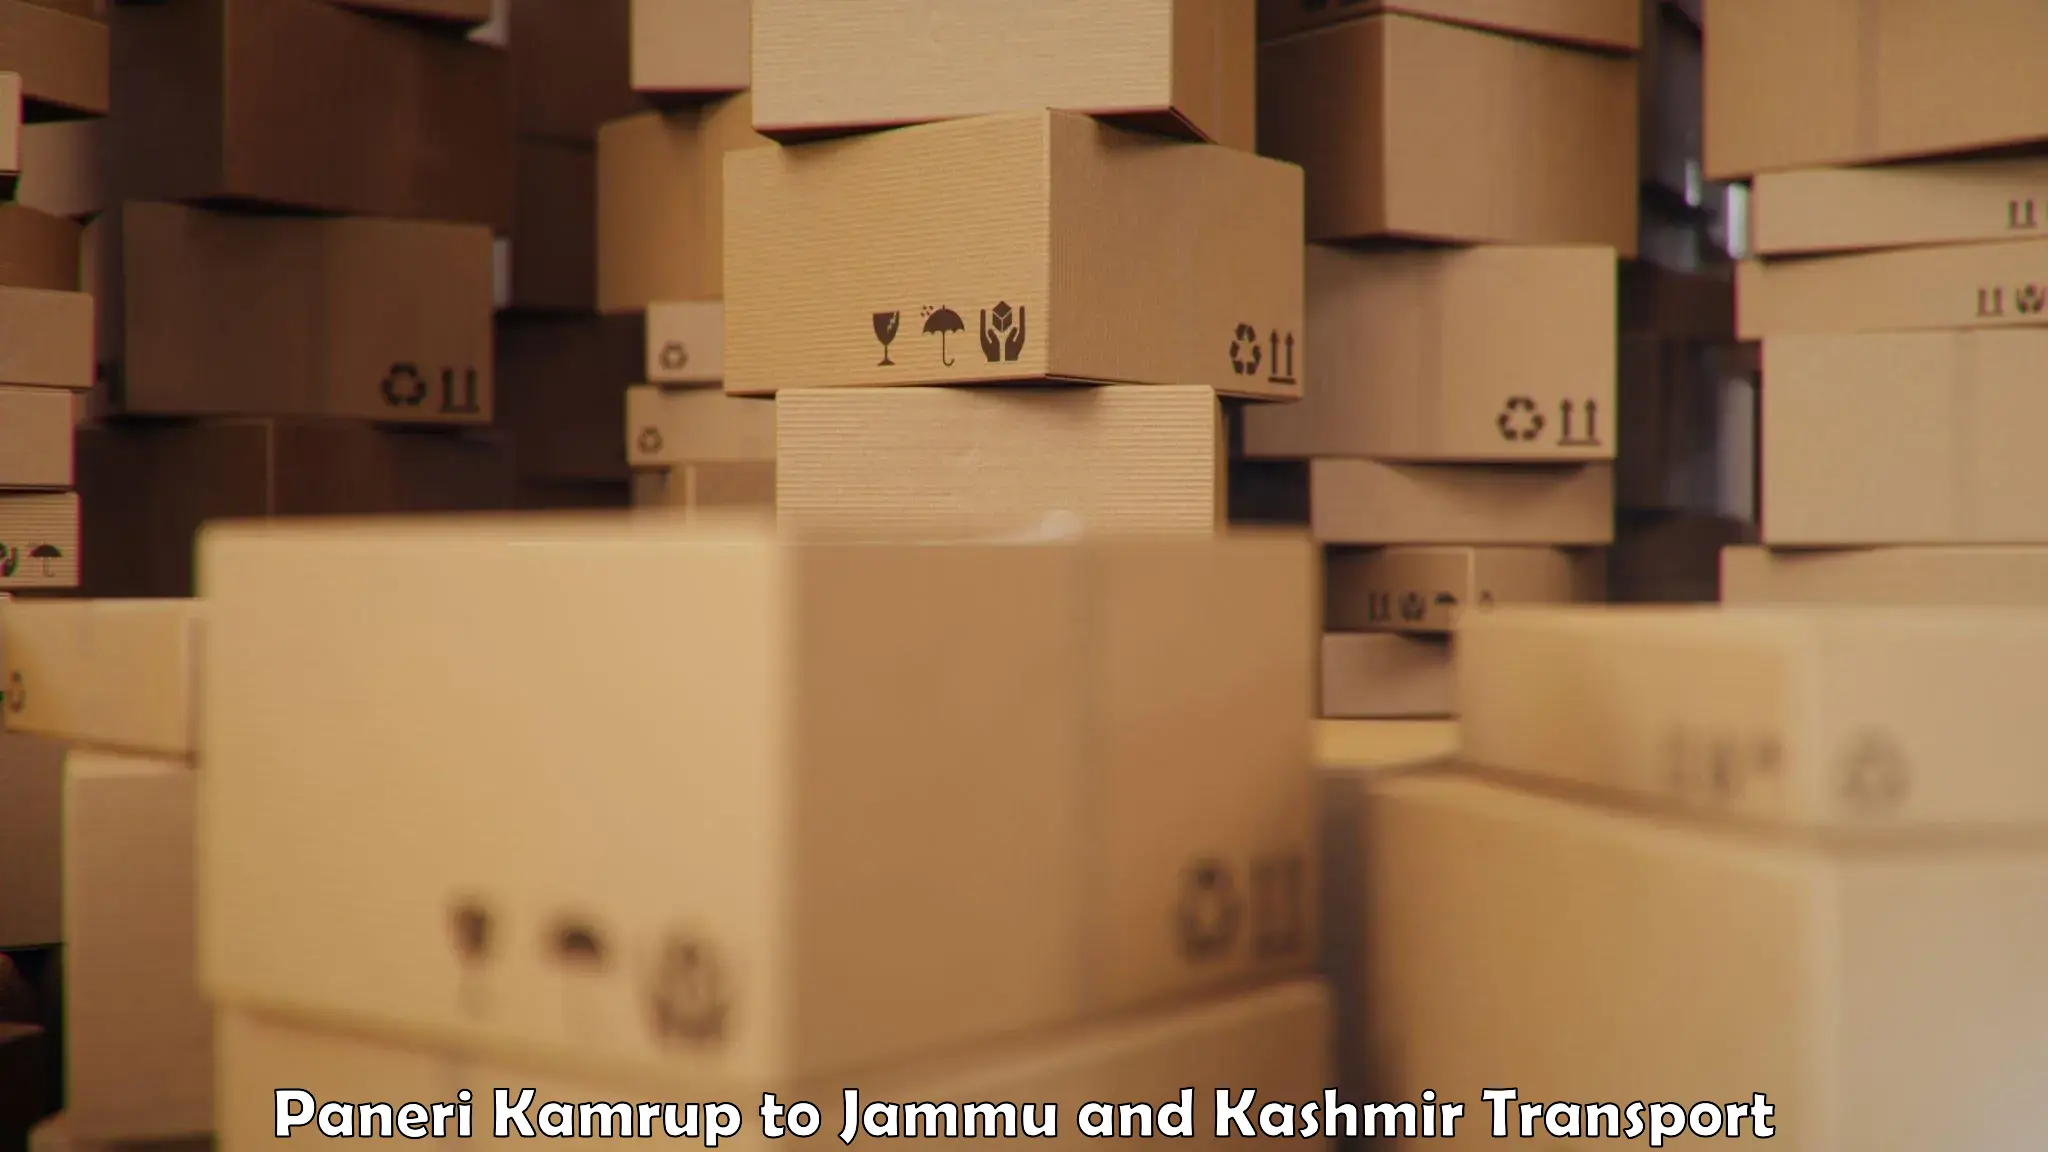 Truck transport companies in India Paneri Kamrup to Leh